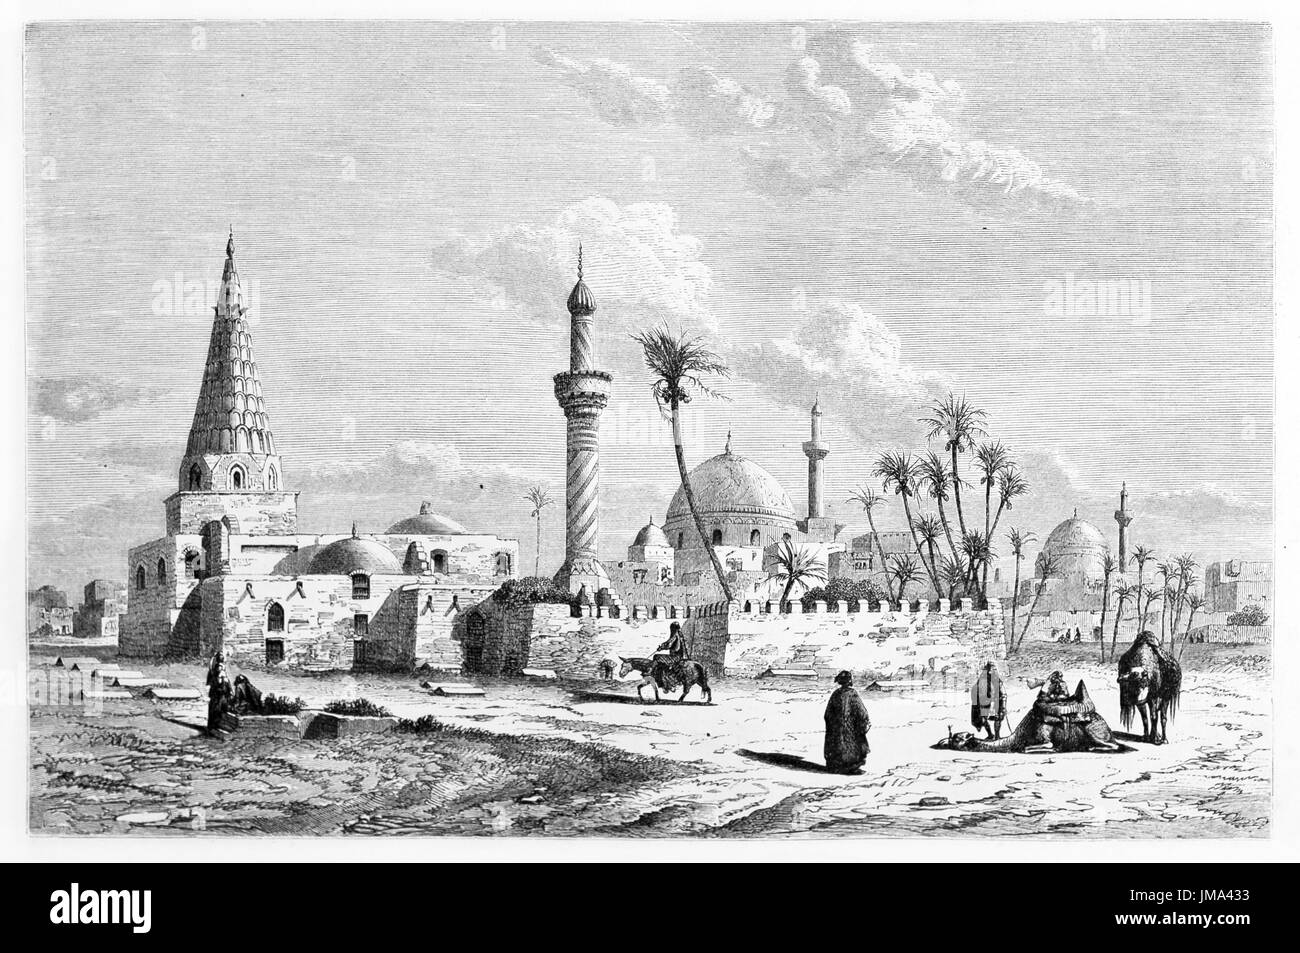 Gesamtansicht des arabischen monumentalen Gebäudes auf einer warmen desertischen Landschaft, Mausoleum von Omar Al-Sahrawardi, Bagdad. Kunst von Flandin, 1861 Stockfoto